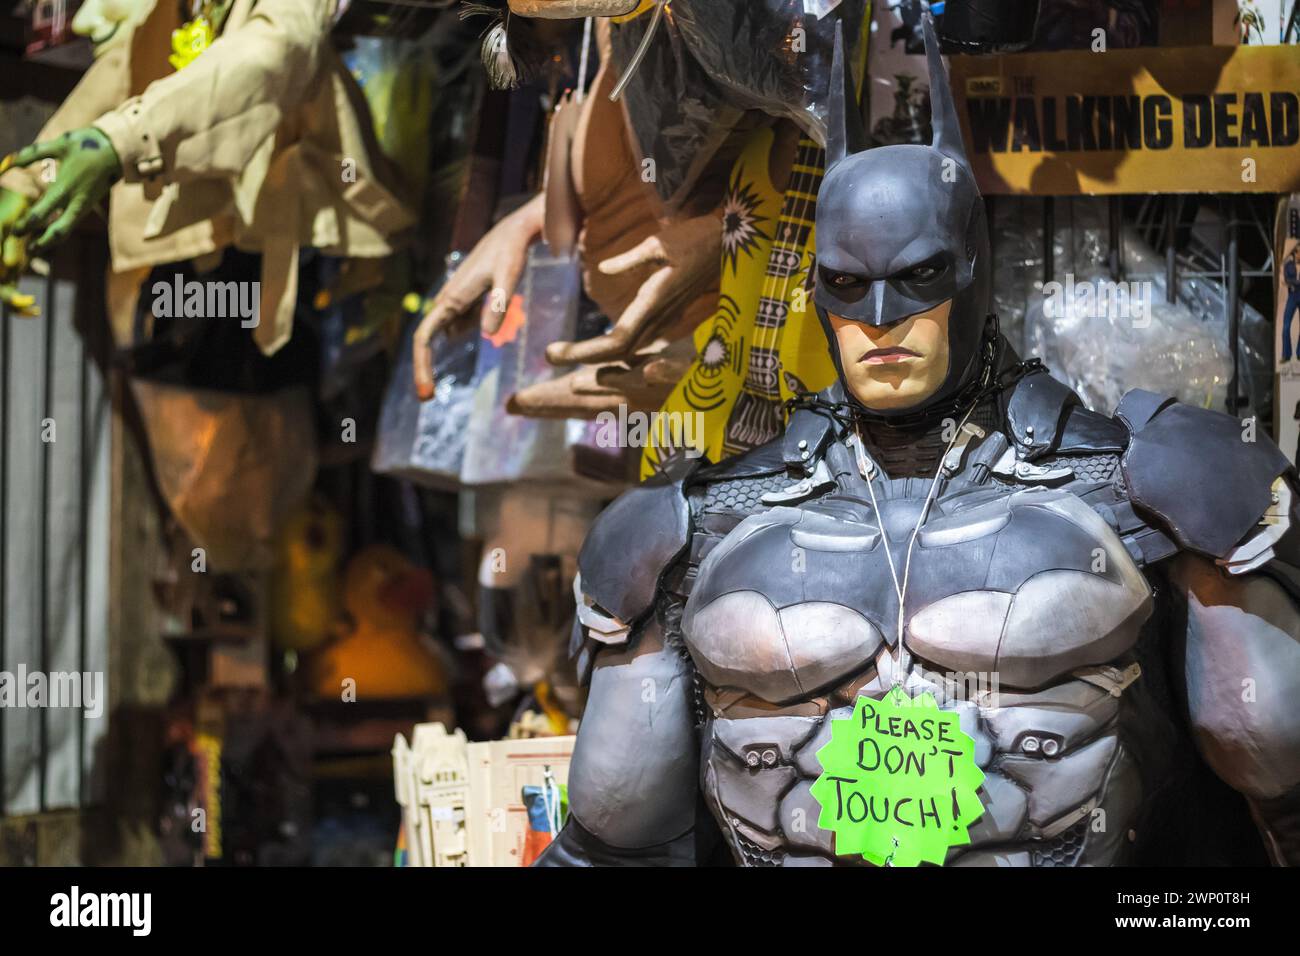 Londres, Royaume-Uni - 12 septembre 2023 - Une réplique grandeur nature de Batman exposée dans une boutique d'objets de collection de films et de télévision à Camden Market Banque D'Images